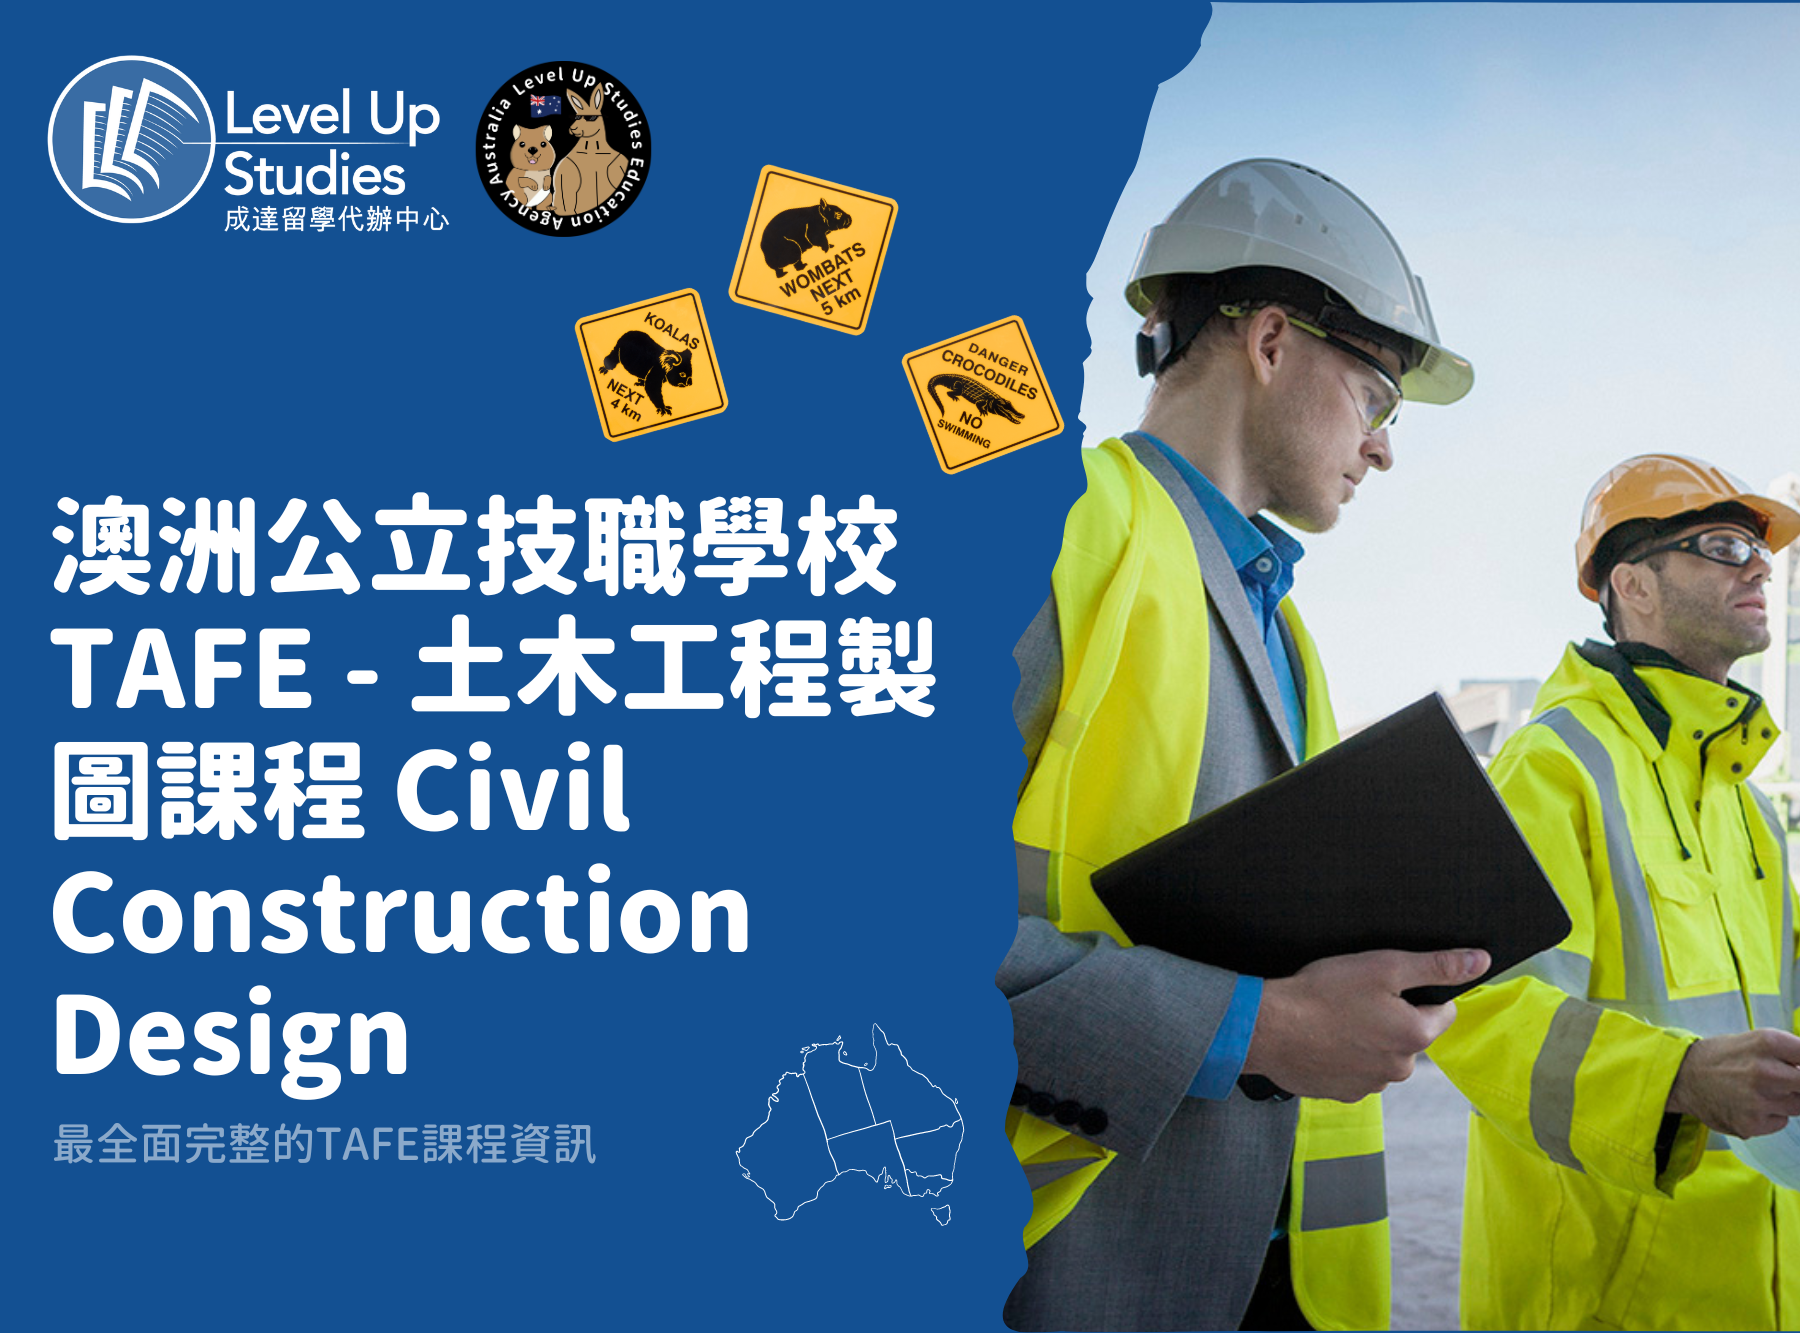 澳洲公立技職學校TAFE - 土木工程製圖課程 Civil Construction Design